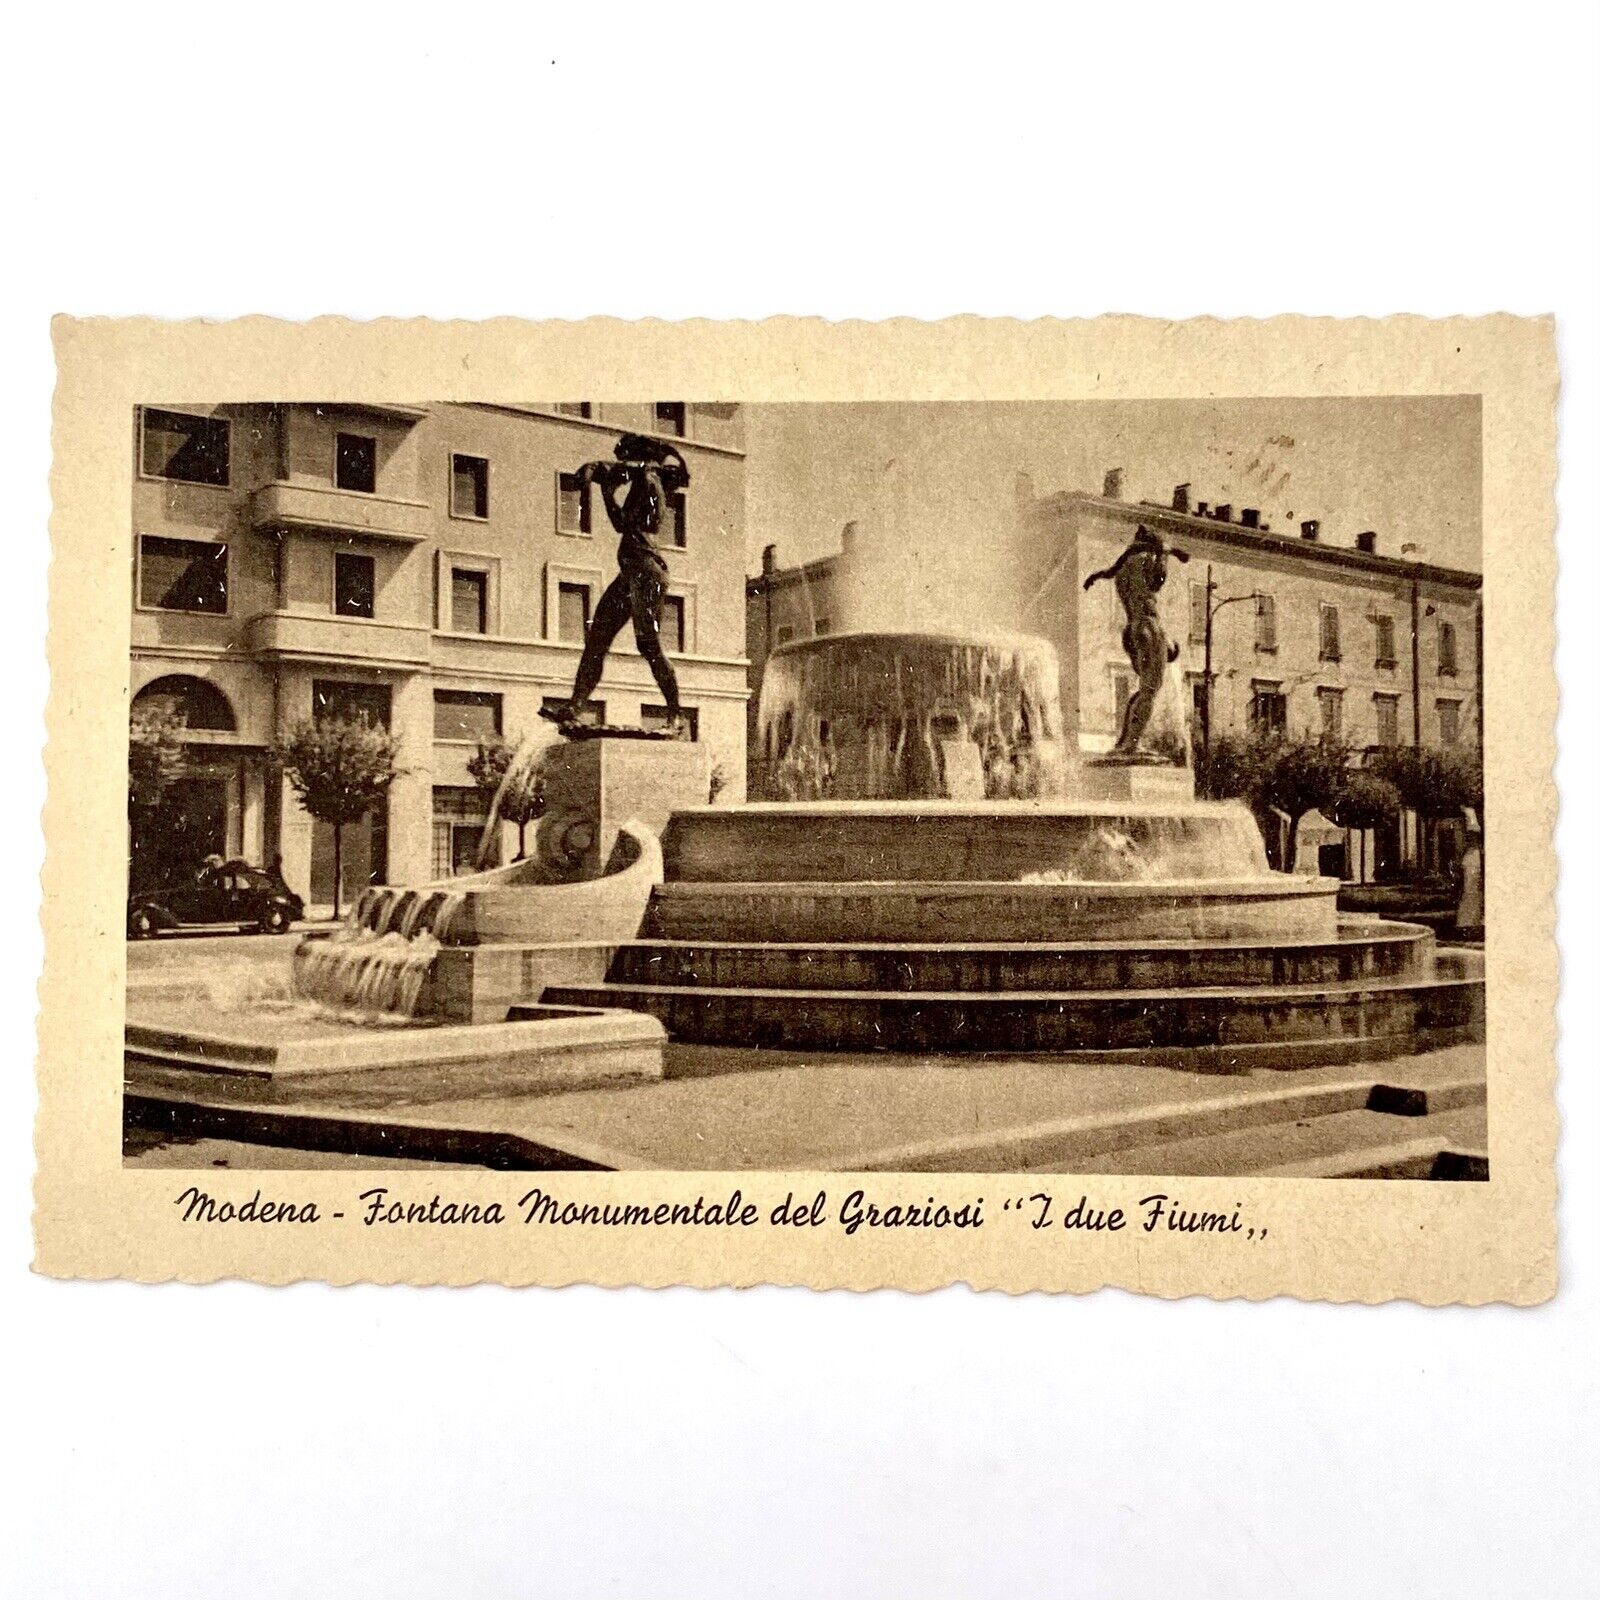 Vintage Postcard Graziosi Monumental Fountains Modena Two Rivers Scalloped Edge